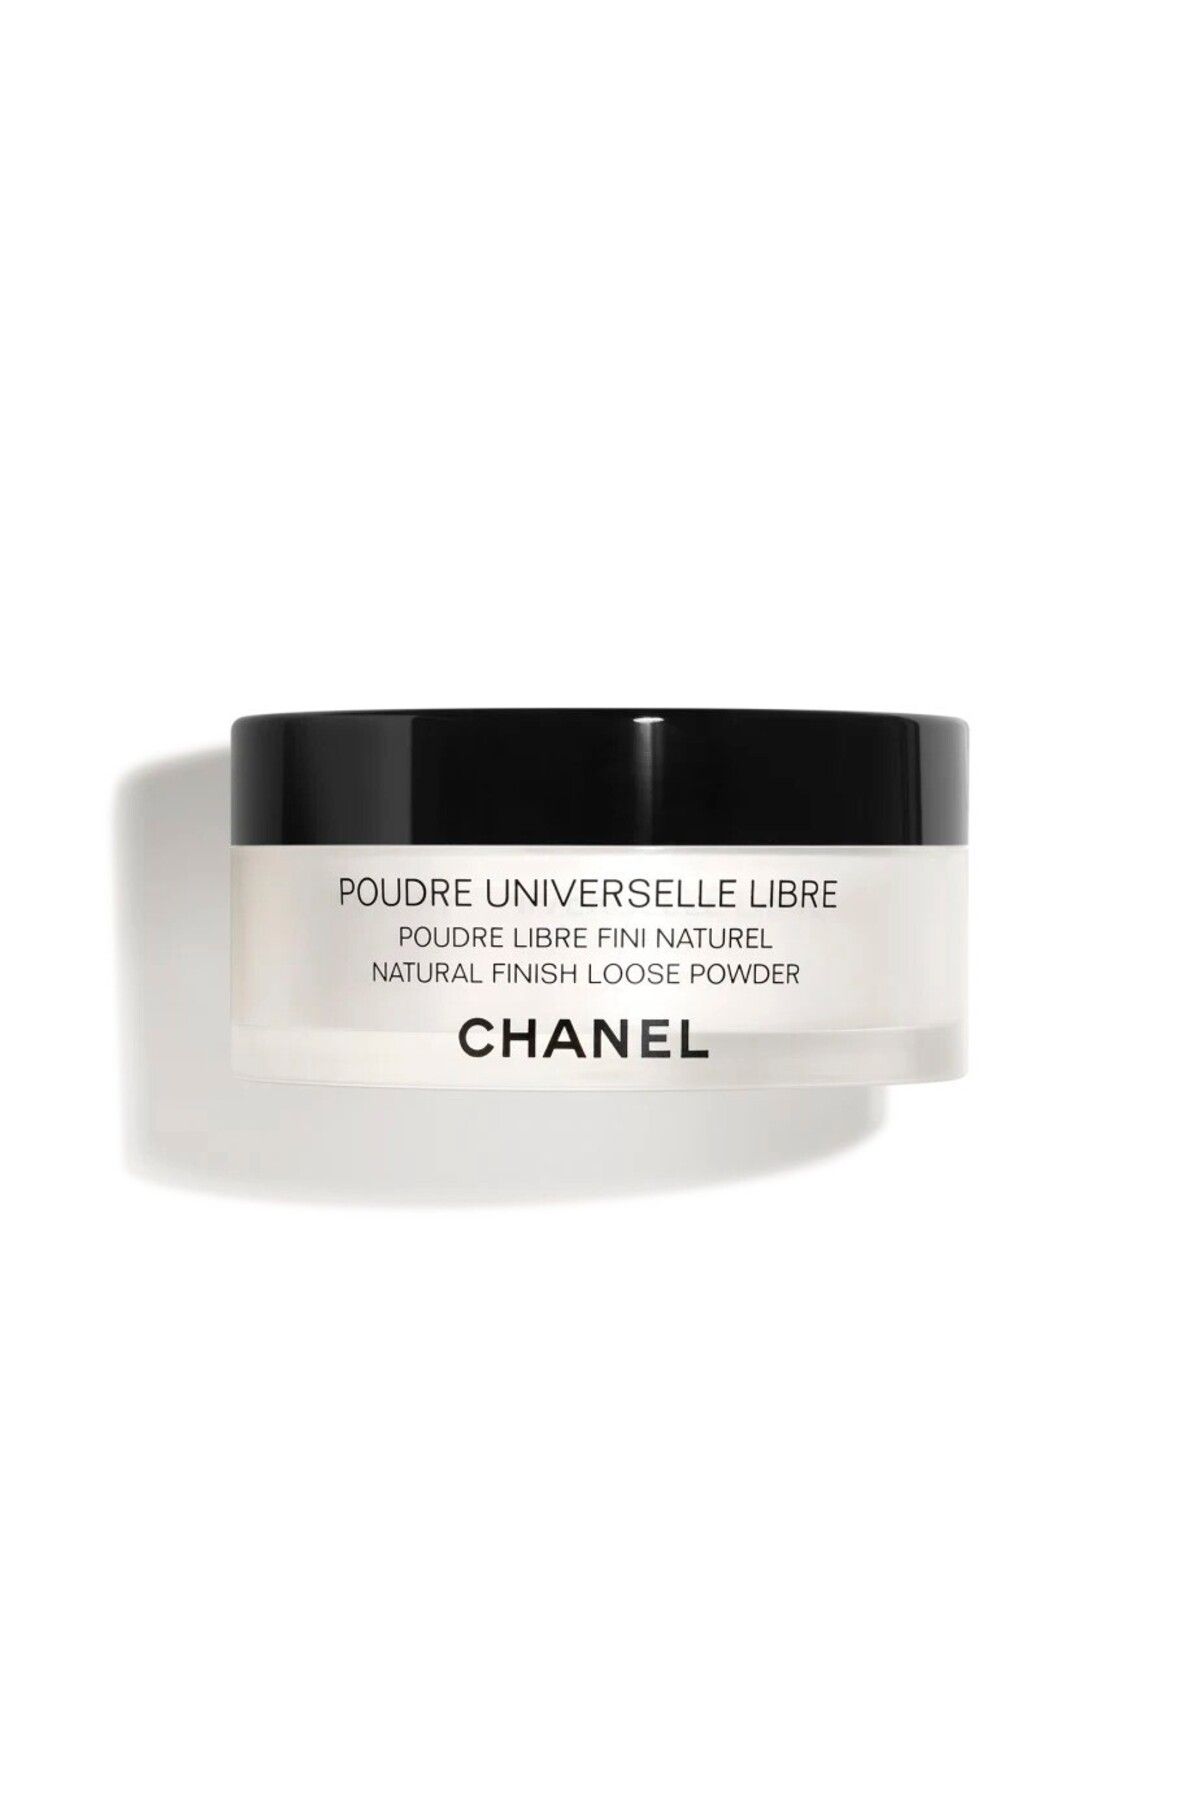 Chanel - DOĞAL SONUÇ İÇİN TOZ PUDRA - POUDRE UNIVERSELLE LIBRE - 10